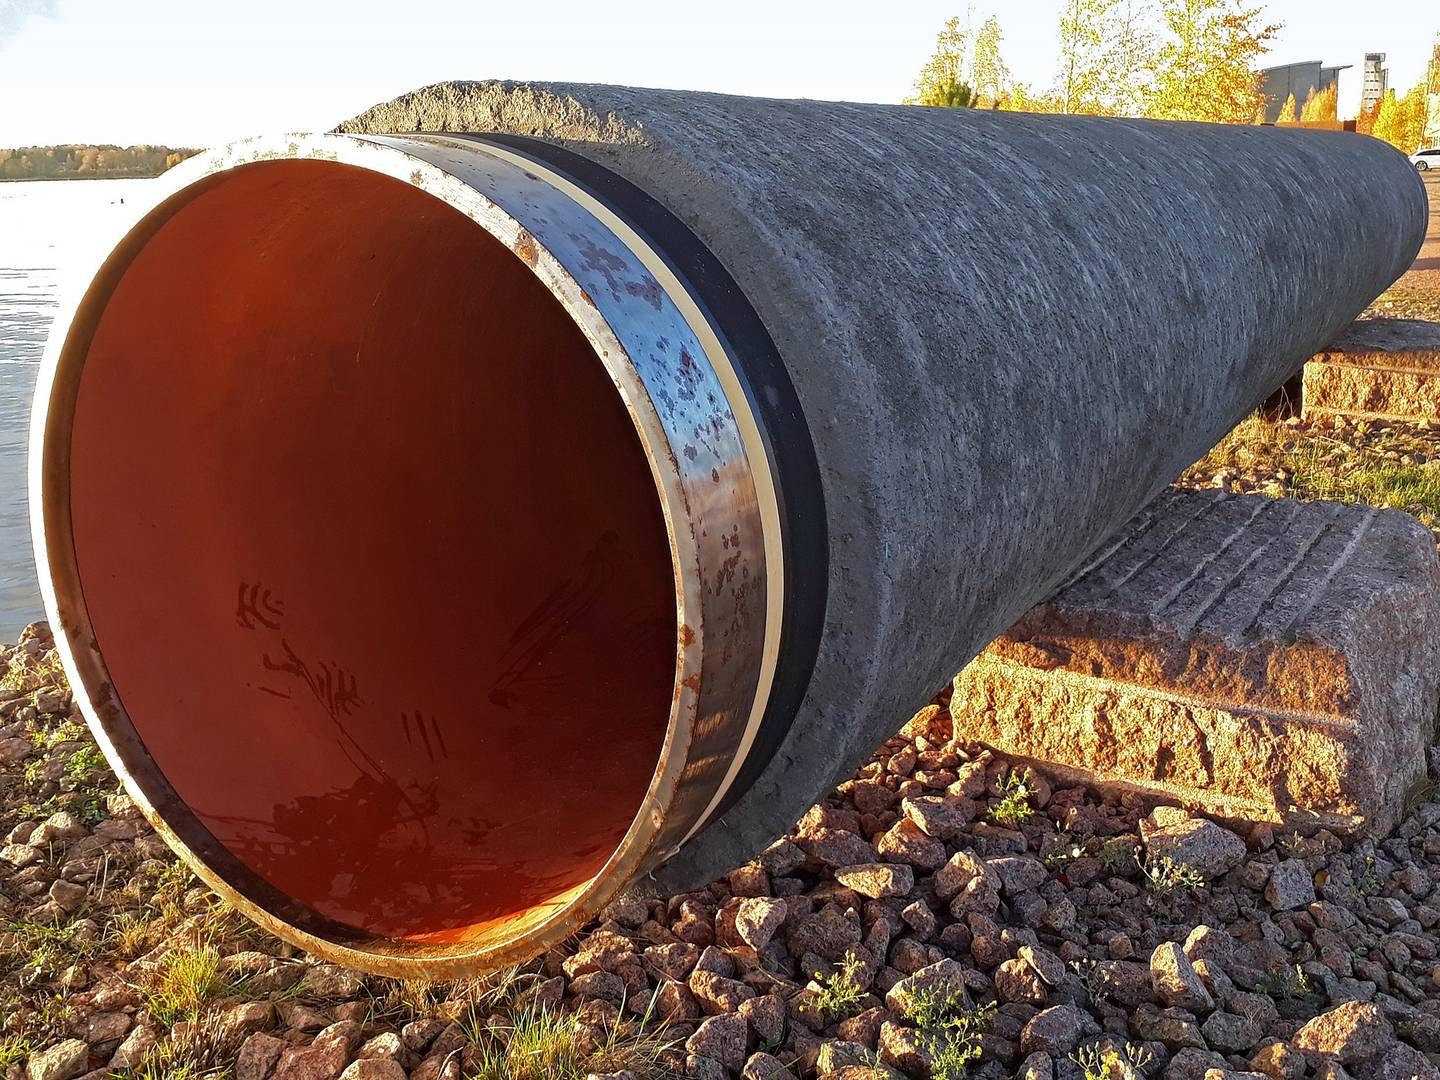 UTSTILT RØR: En del av gassrøret Nord Stream er satt opp på utstilling i Kotka i Finland. | Foto: Vuo, Wikipedia, CC BY-SA 4.0